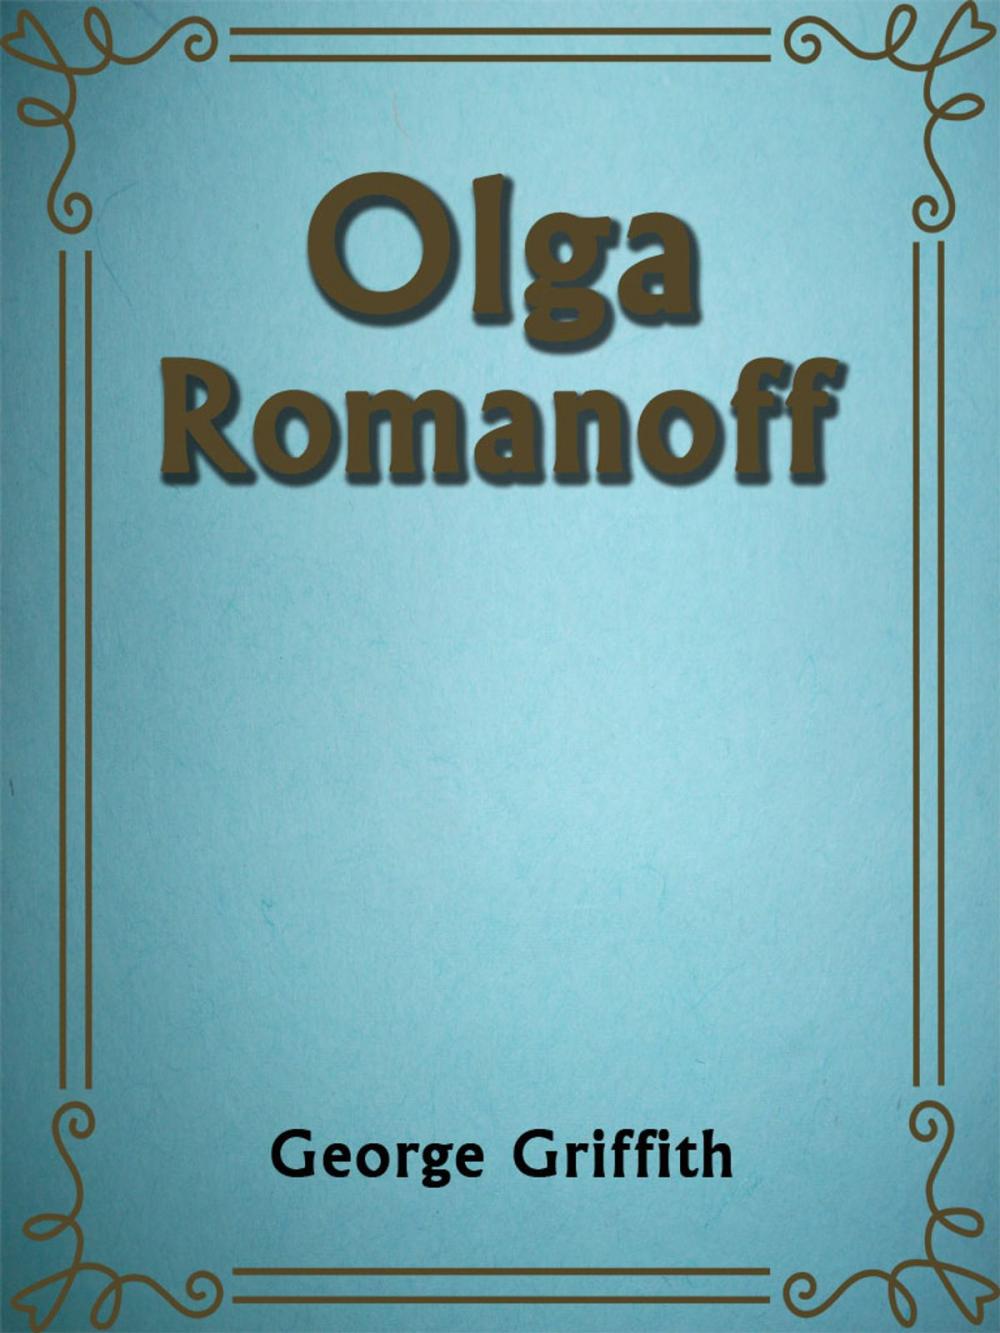 Big bigCover of Olga Romanoff